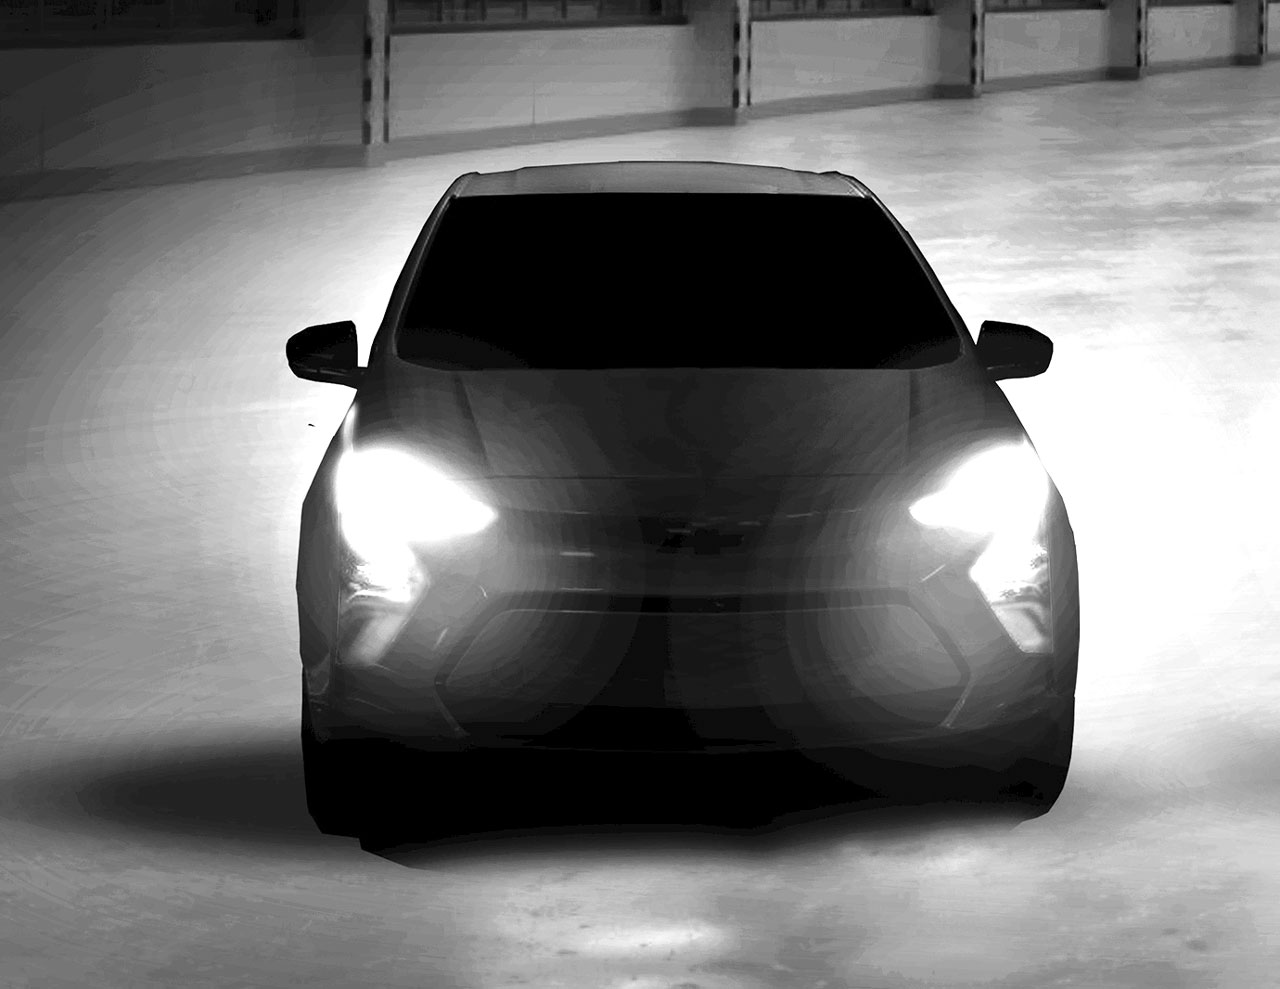 Novo Chevrolet Bolt (imagem escurecida)